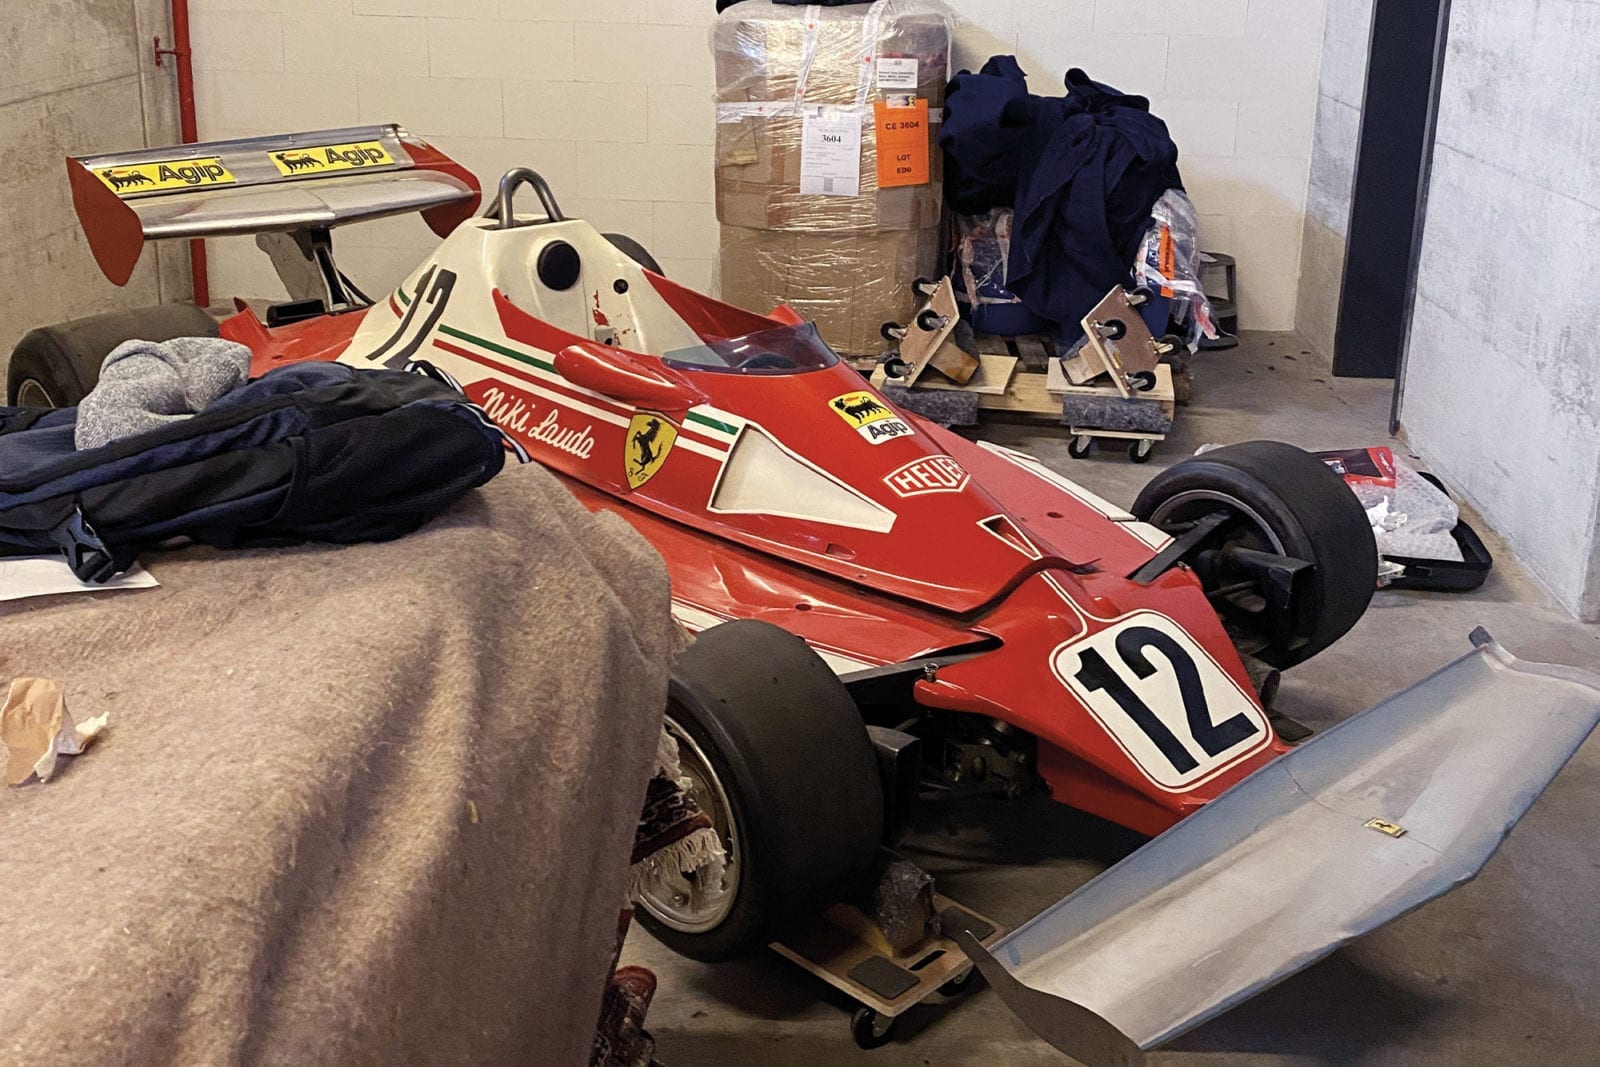 Niki Lauda 312T from 1975 in lock-up